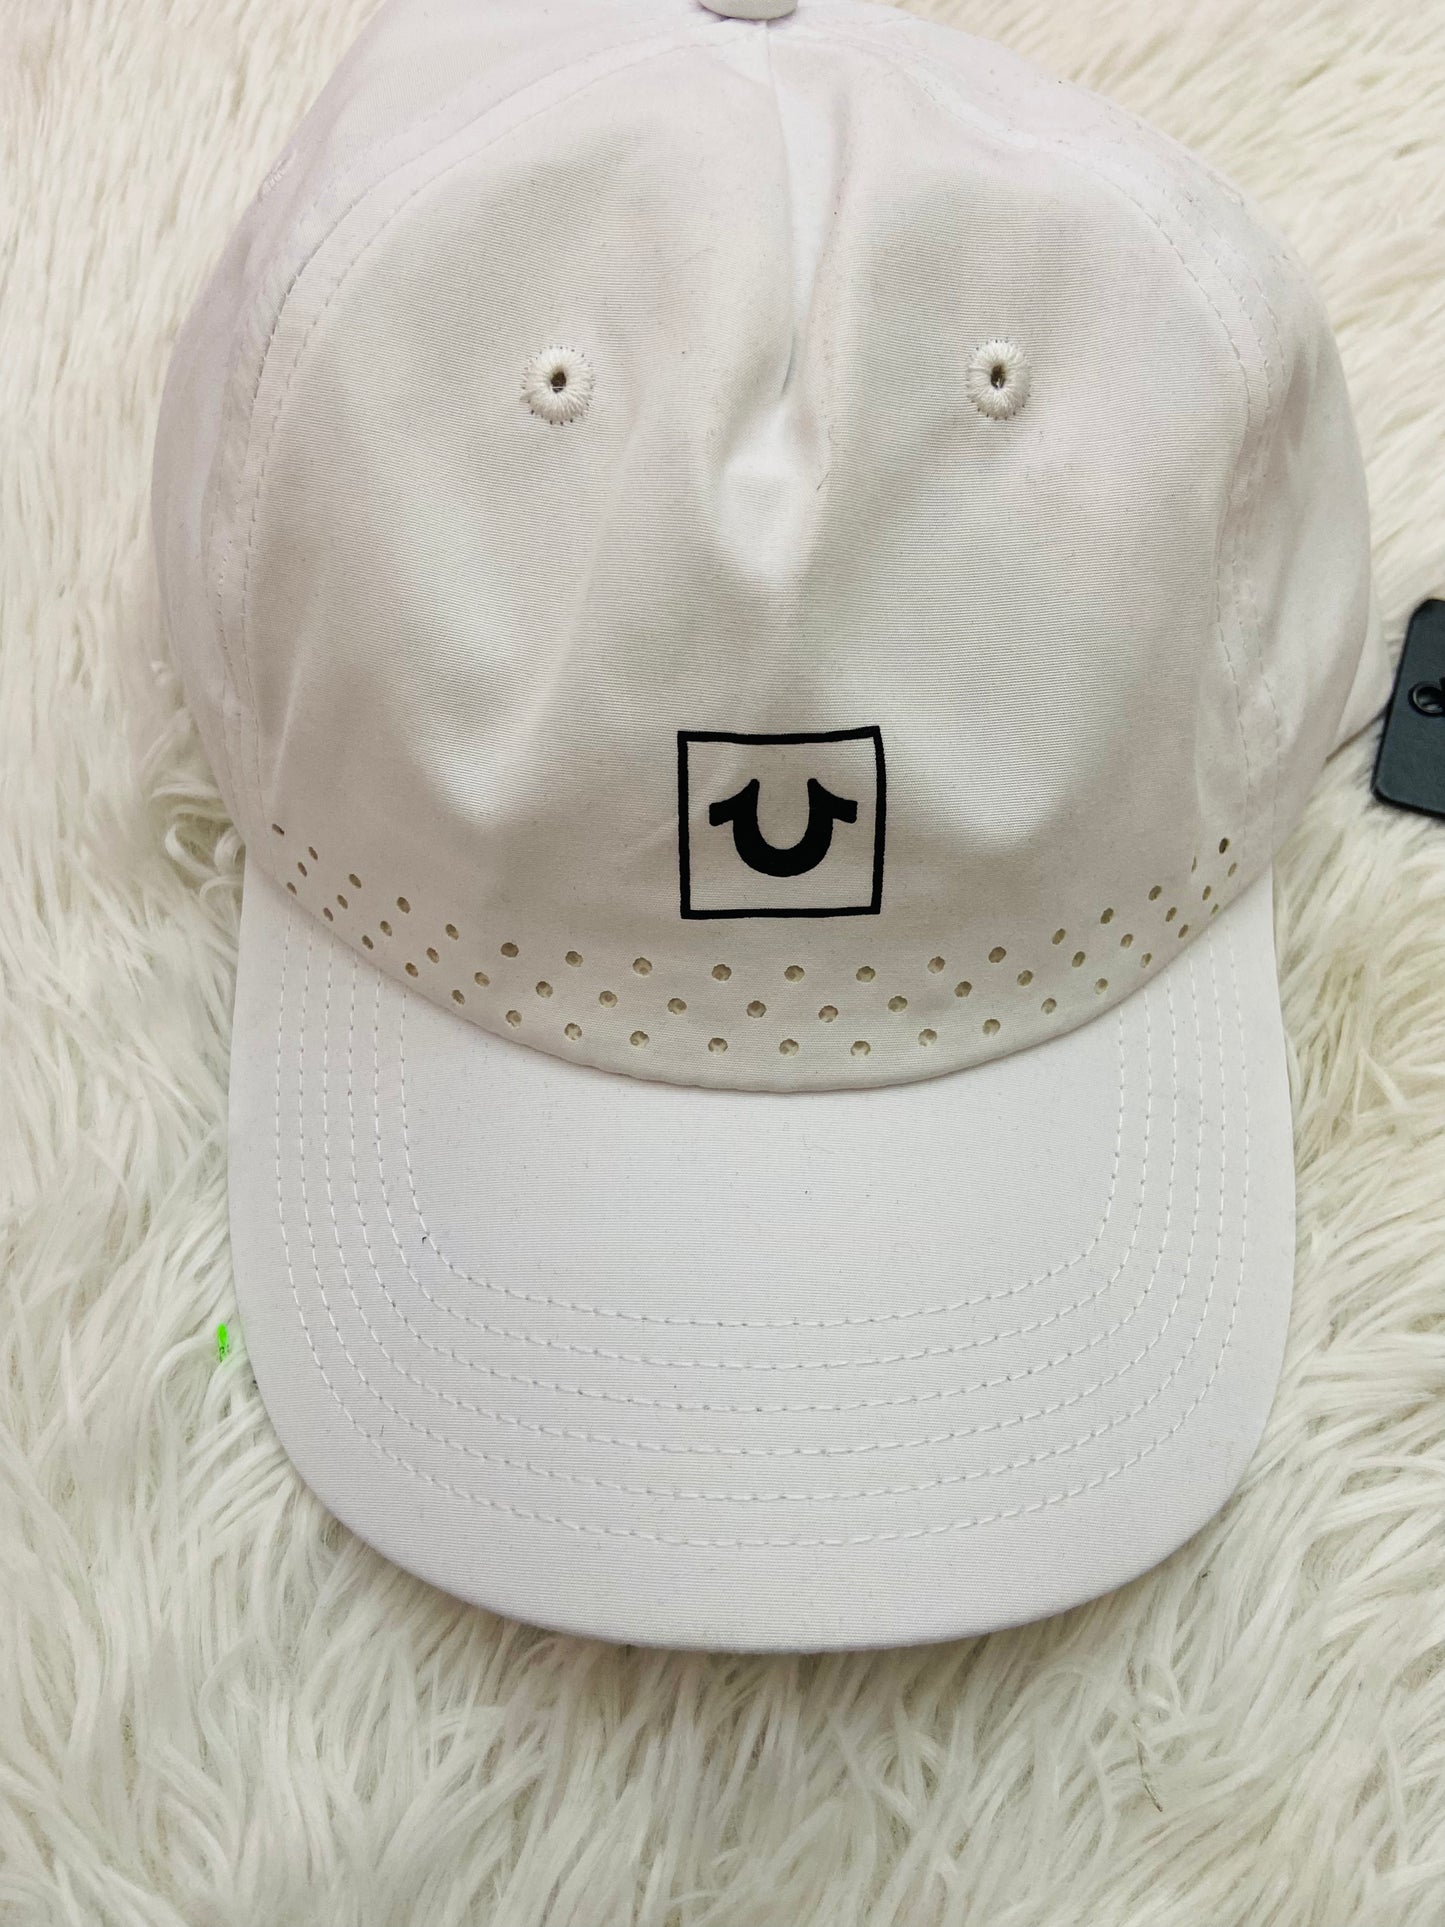 Gorra True Religion original blanca con logotipo de la marca en frente y puntos.